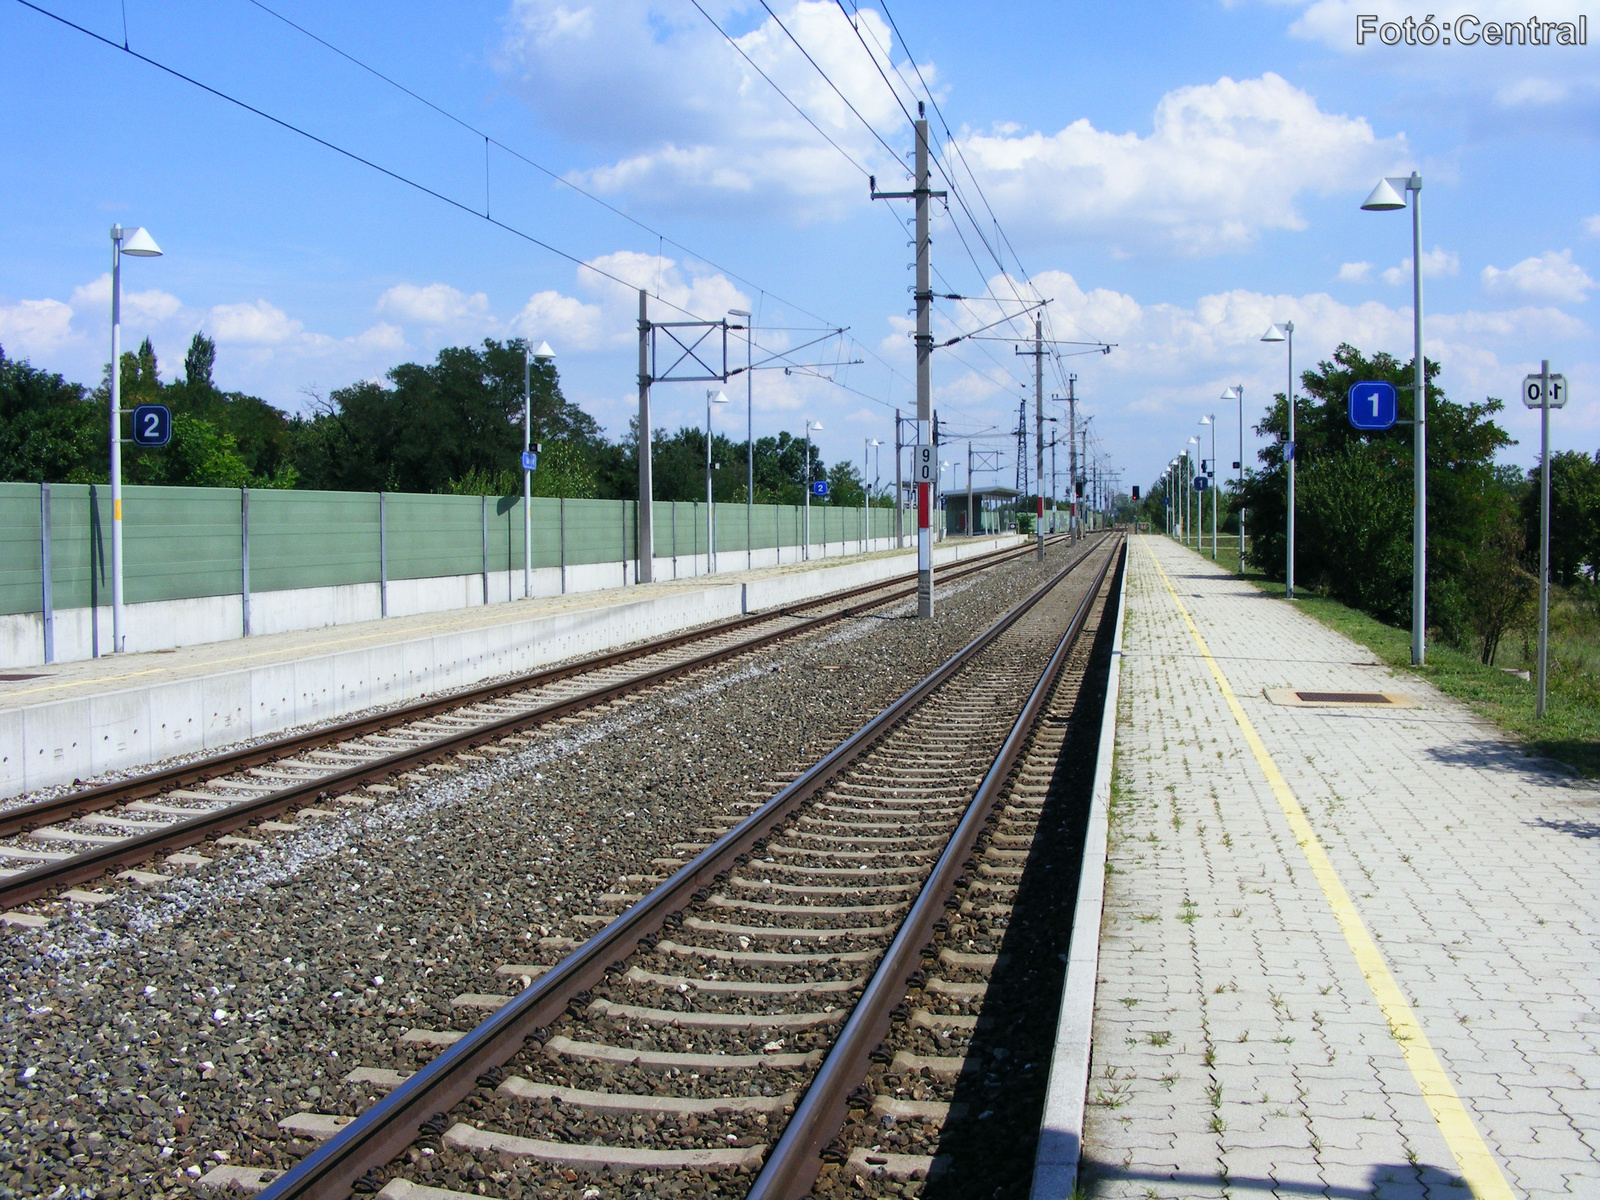 Az 1.számú vágány mellett lévő peron Köpcsény felé nézve.